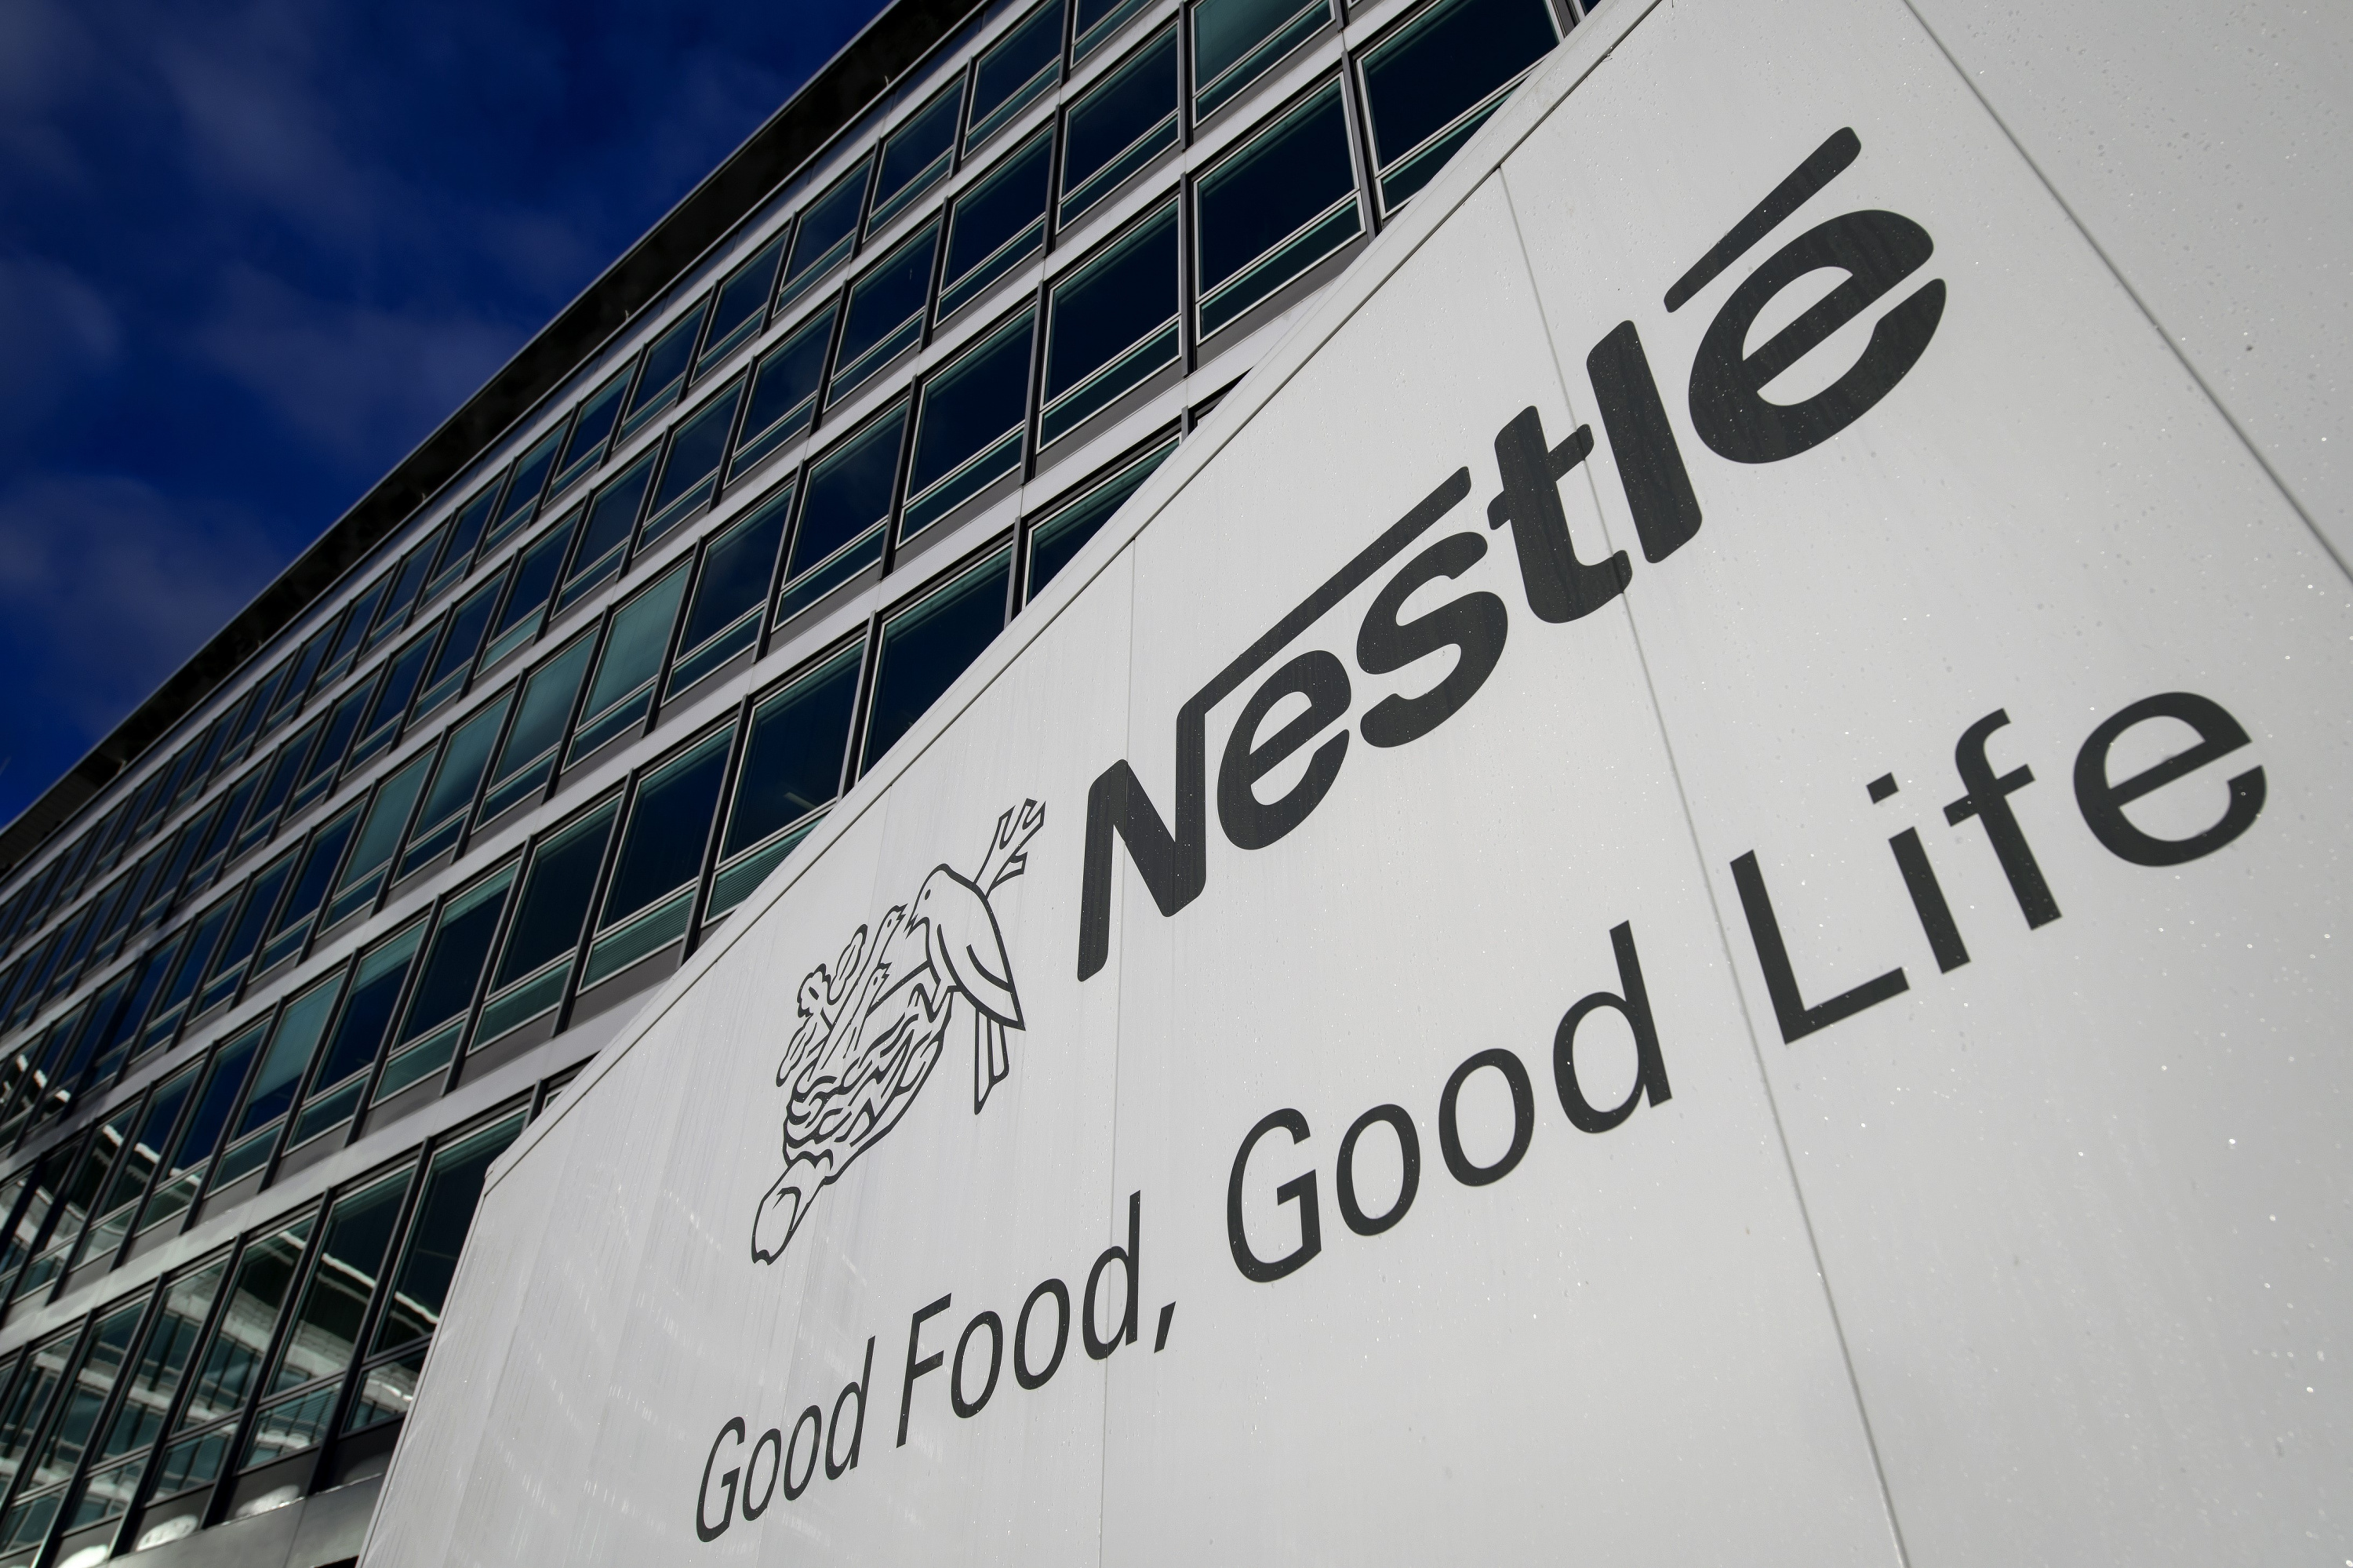 Nestlé company